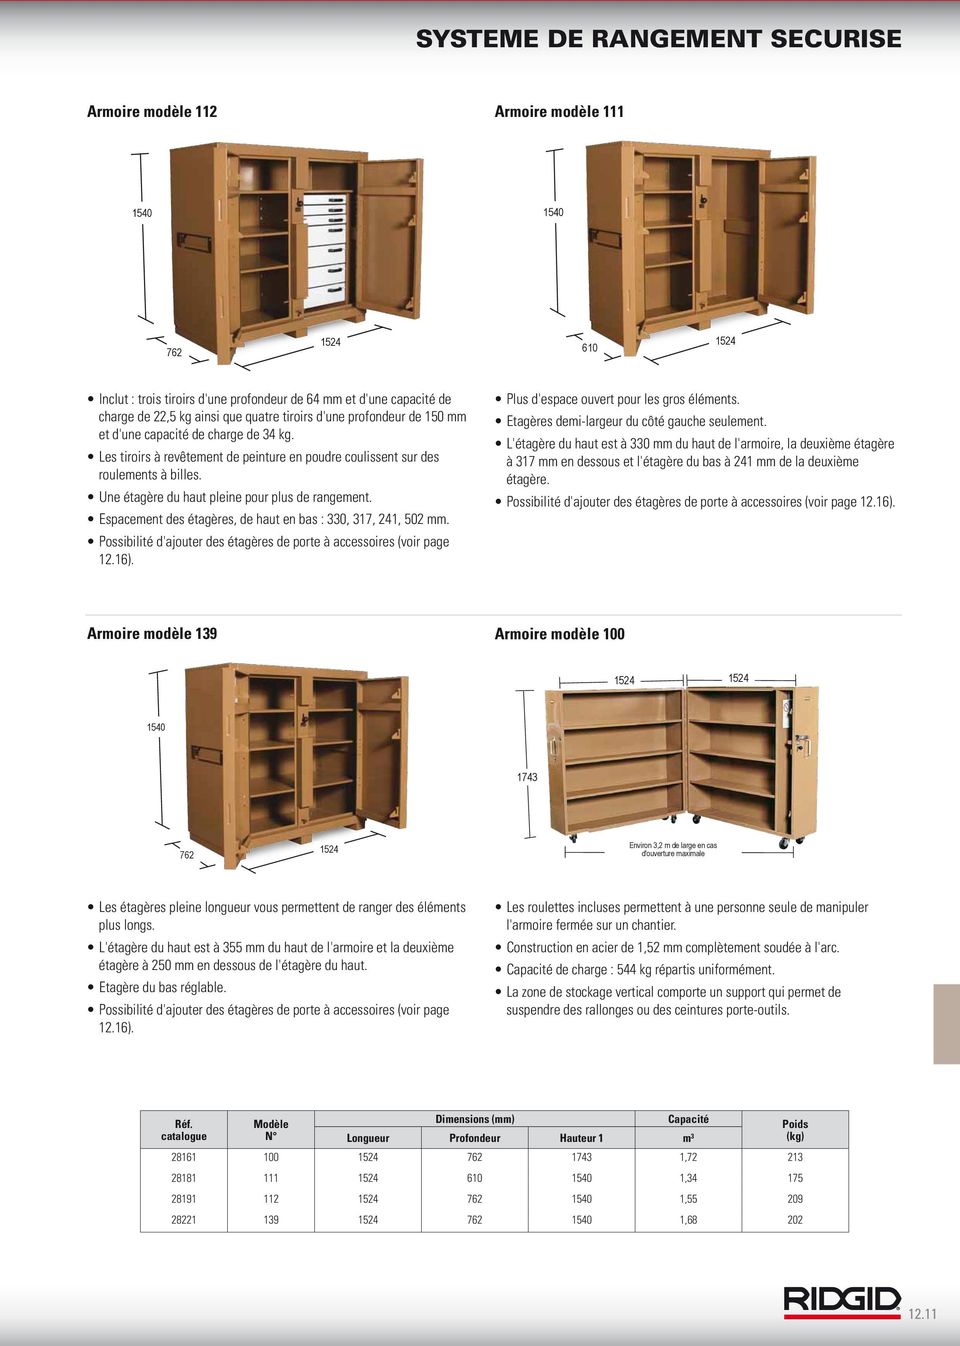 Espacement des étagères, de haut en bas : 330, 317, 241, 502 mm. Possibilité d'ajouter des étagères de porte à accessoires (voir page 12.16). Plus d'espace ouvert pour les gros éléments.